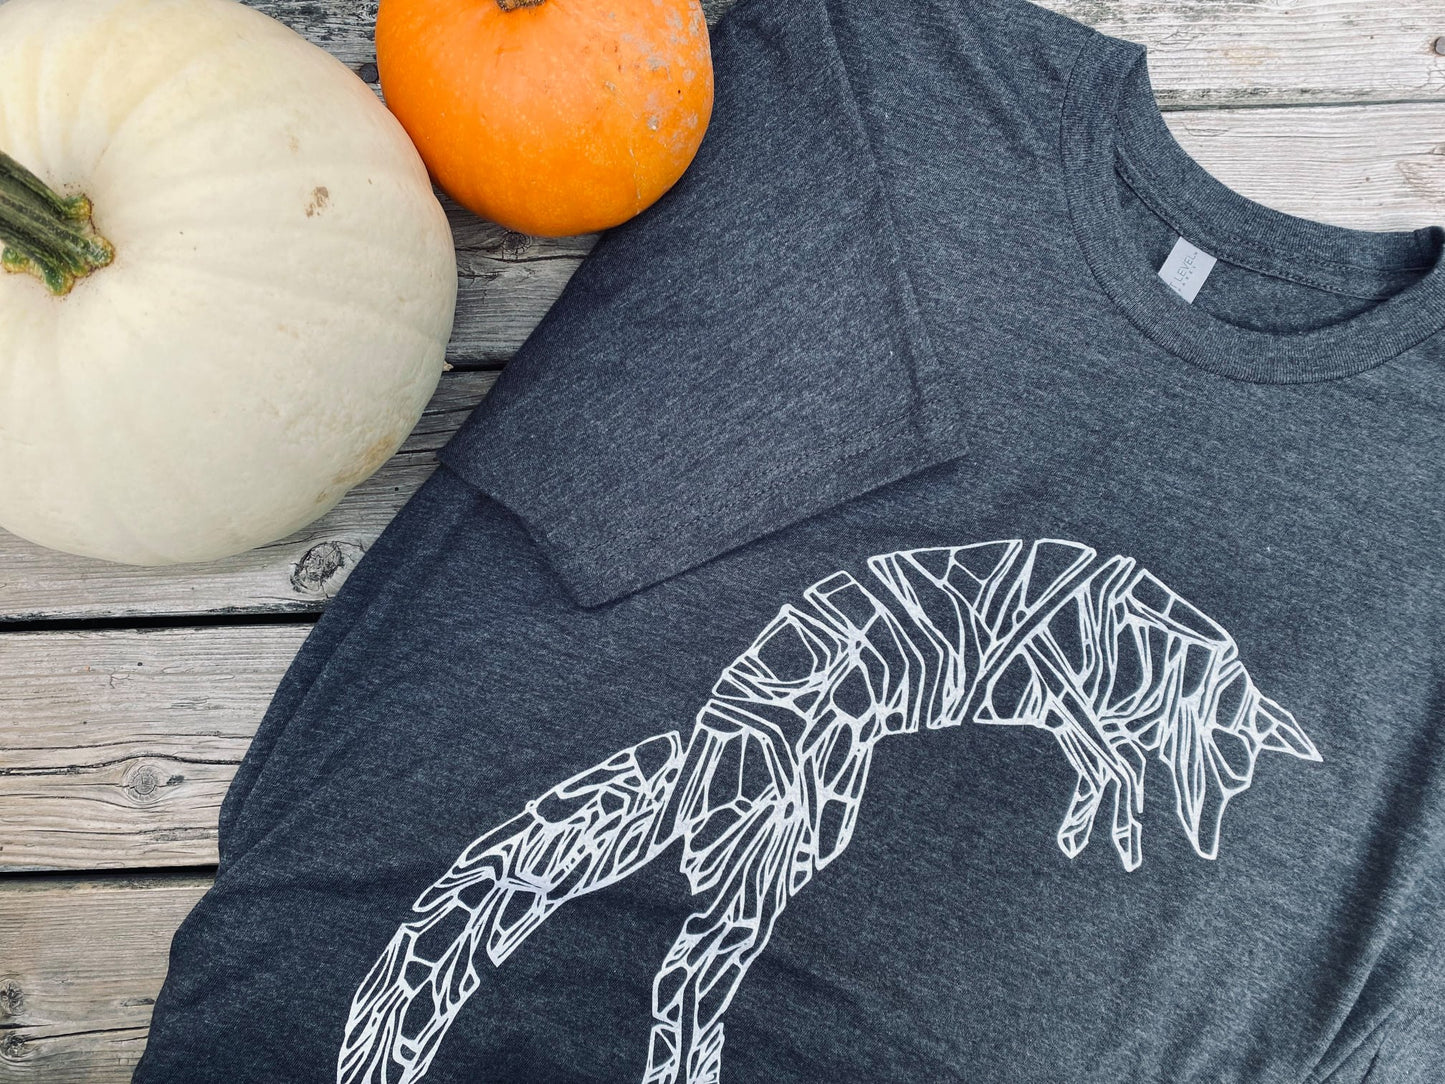 Arctic Fox Graphic T-Shirt - Women's Graphic Tee